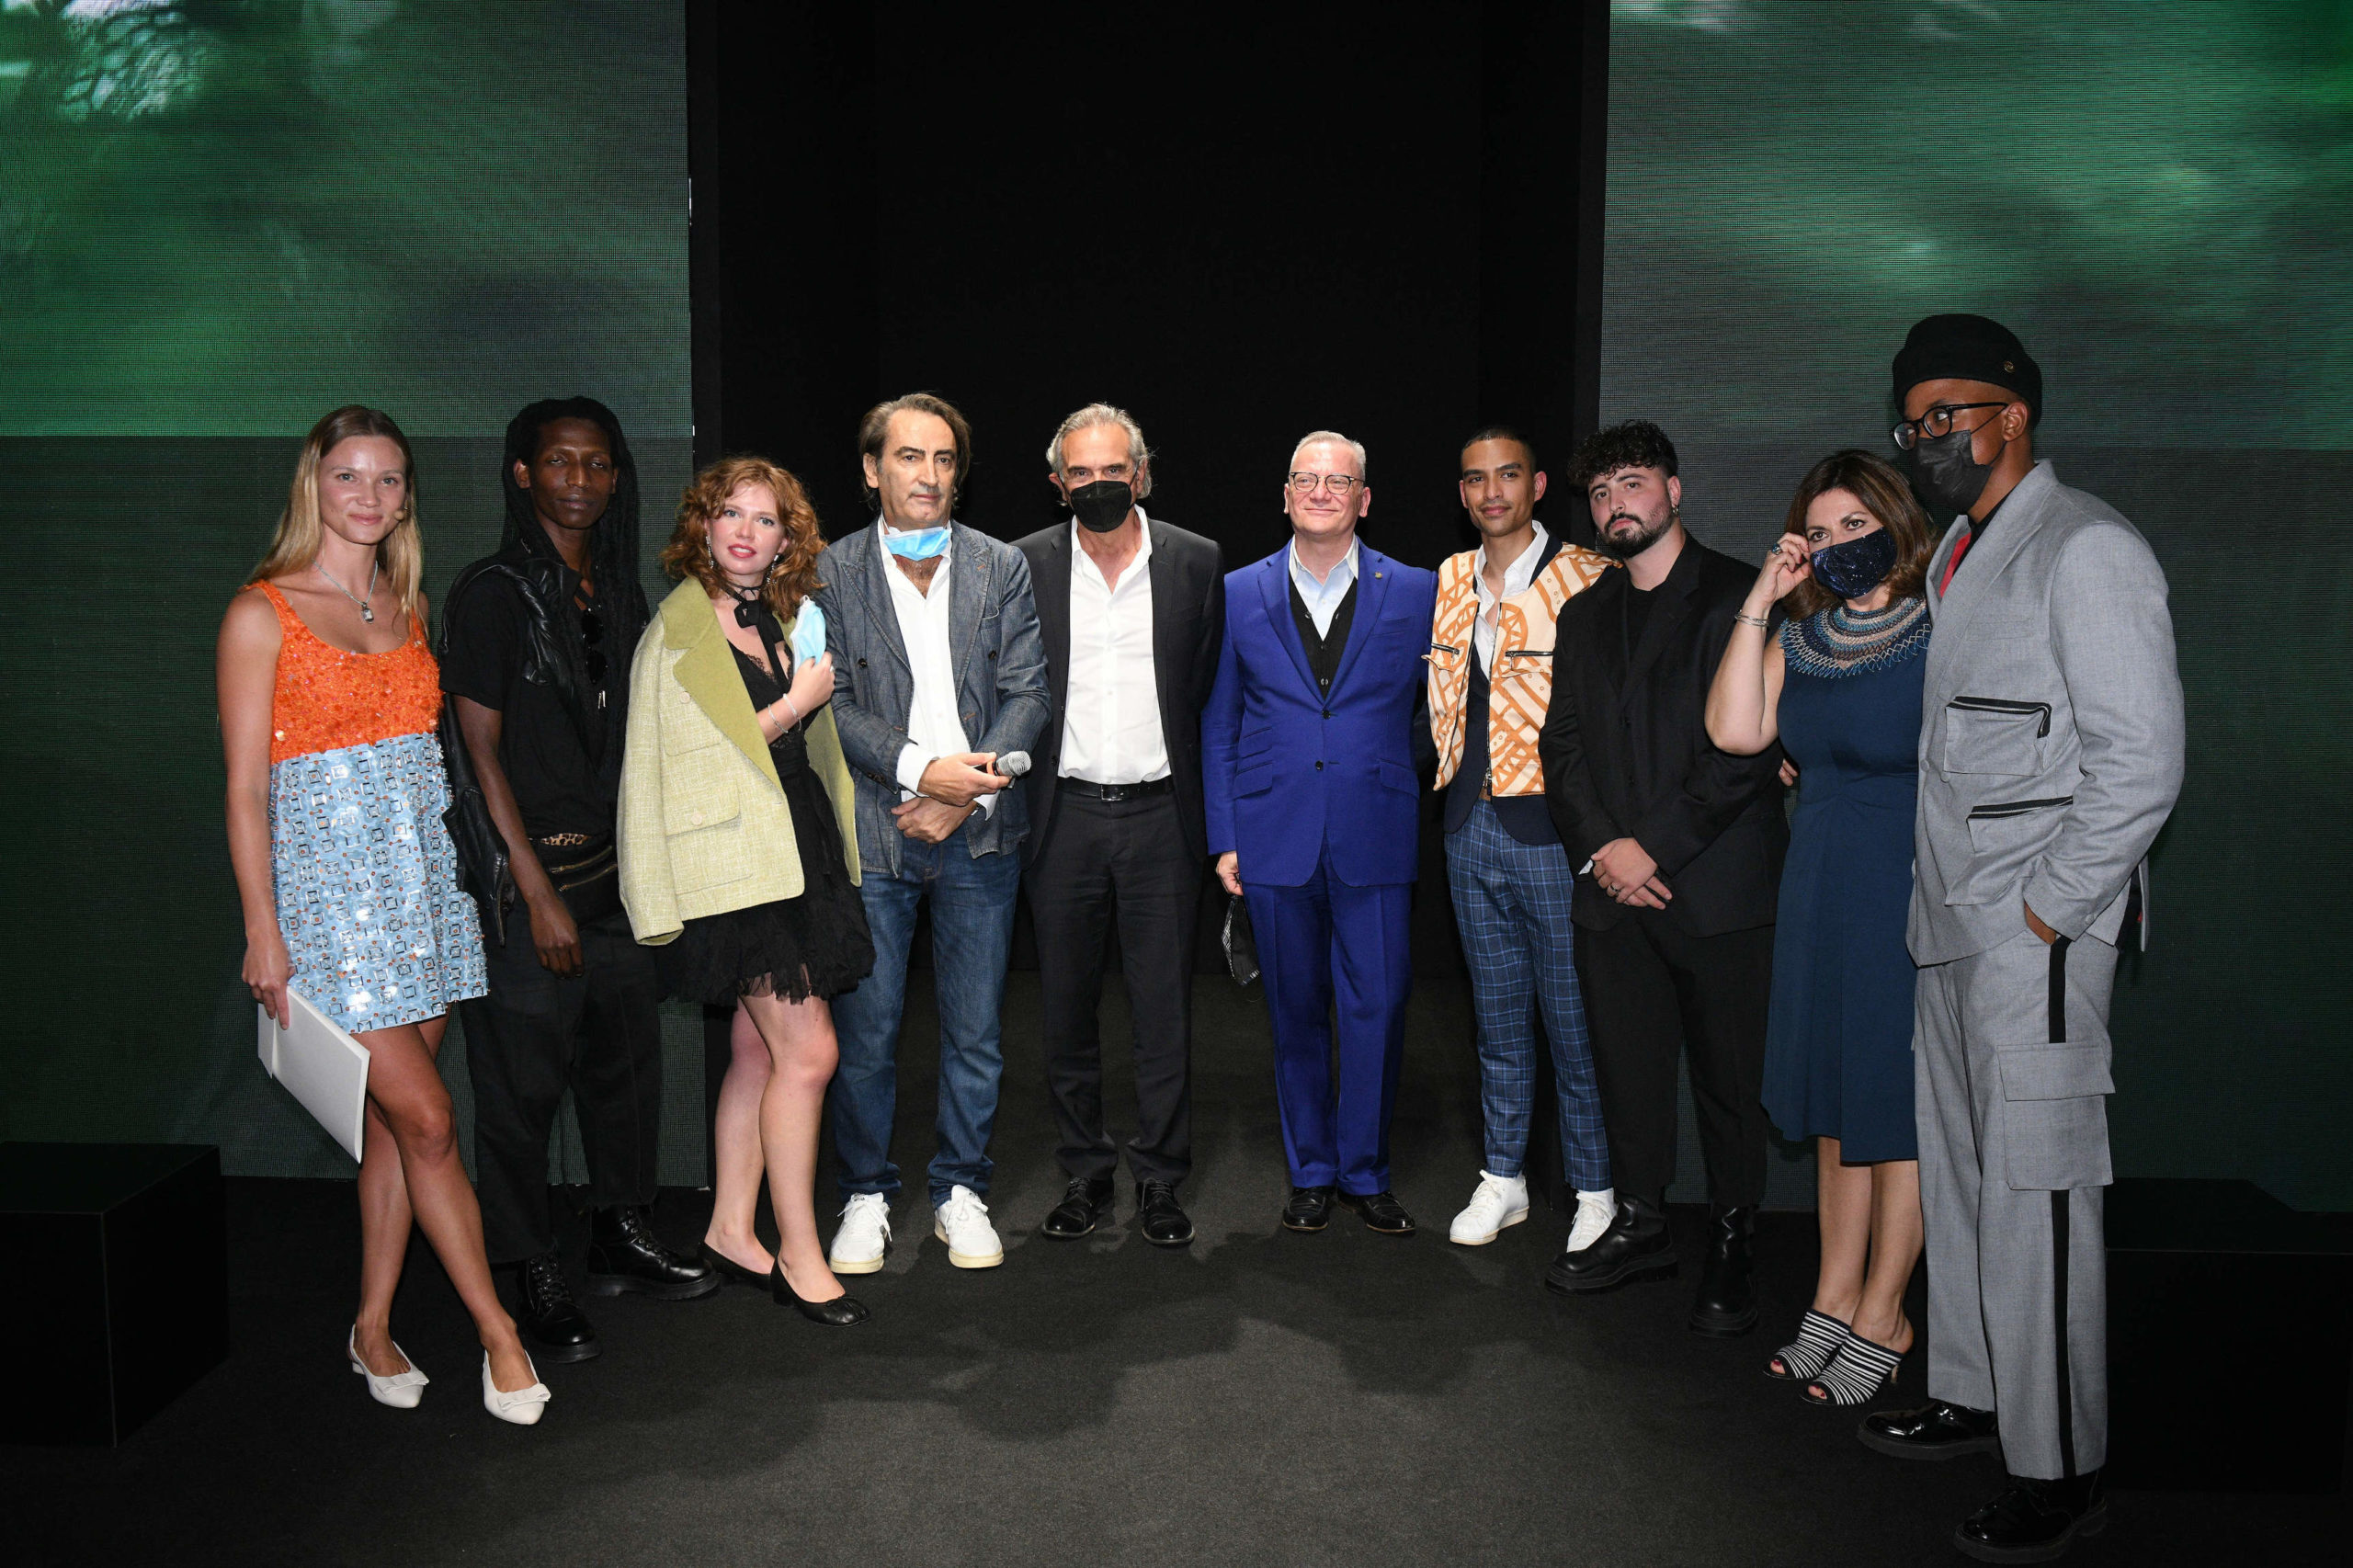  Image courtesy of the Fashion Hub, featuring Fiammetta Cicogna, Beppe Angiolini, Carlo Capasa, and Giacomo Santucci.